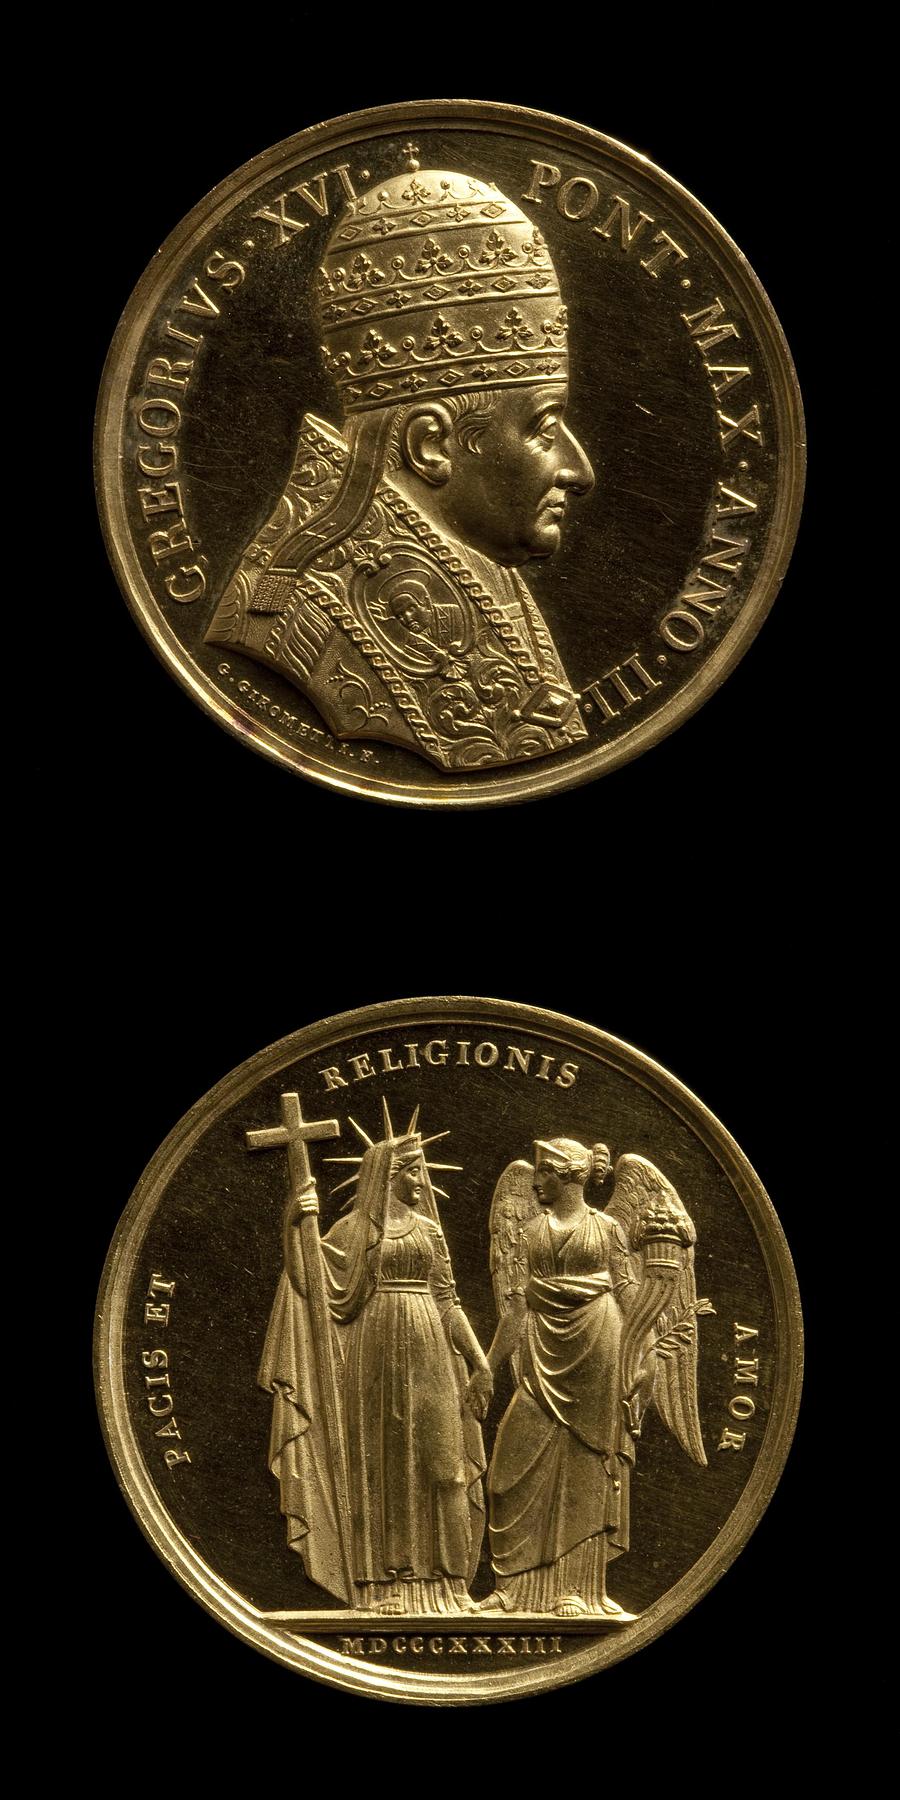 Medaljens forside: Pave Gregor 16. Medaljens bagside: Religionen, F76